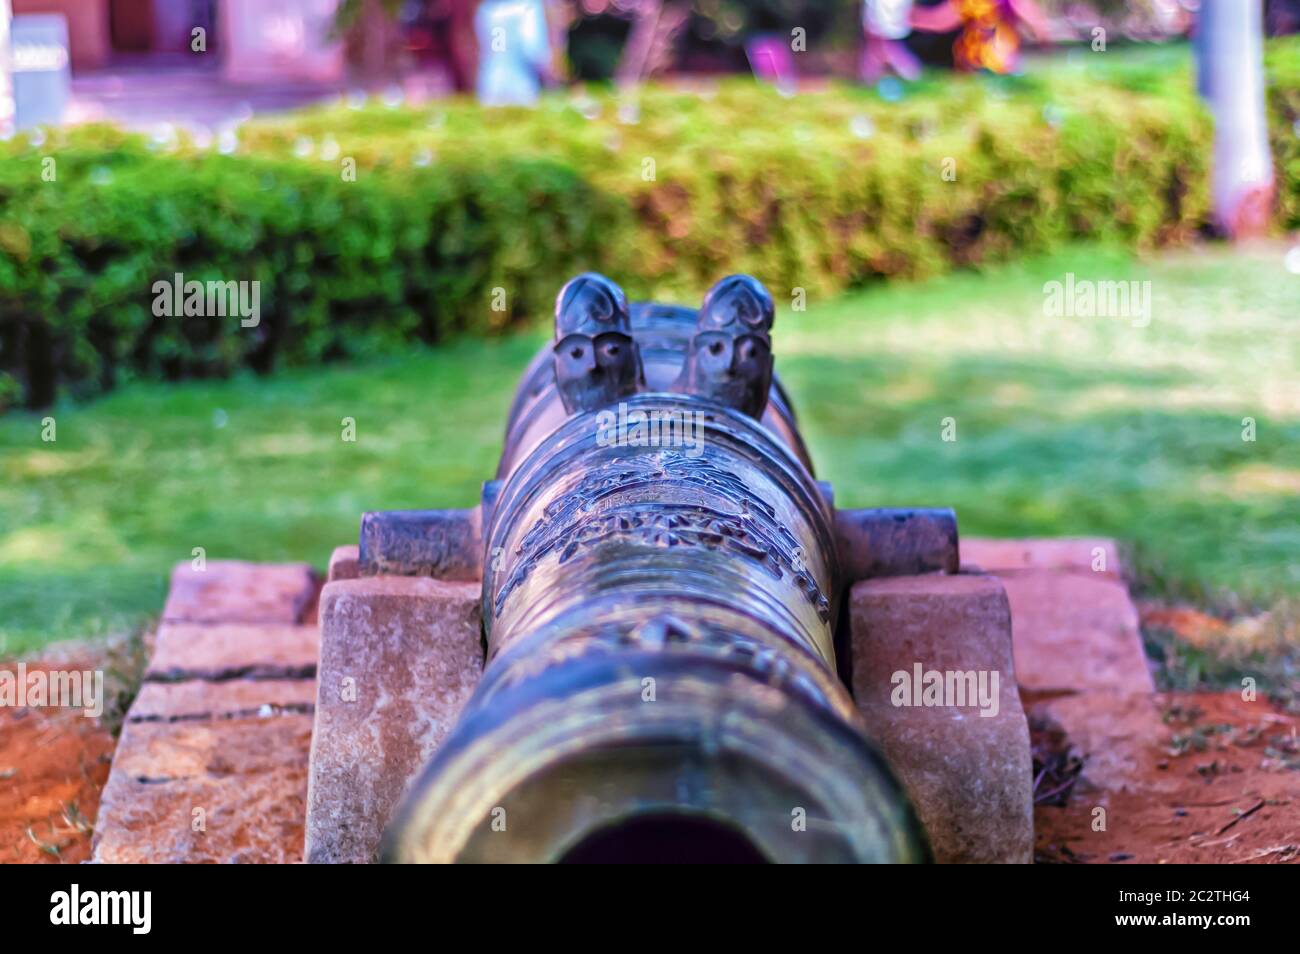 Iron sights/artillery sights and the barrel of an antique cannon at Chowmahalla Palace at Hyderabad, Telangana, India. Stock Photo